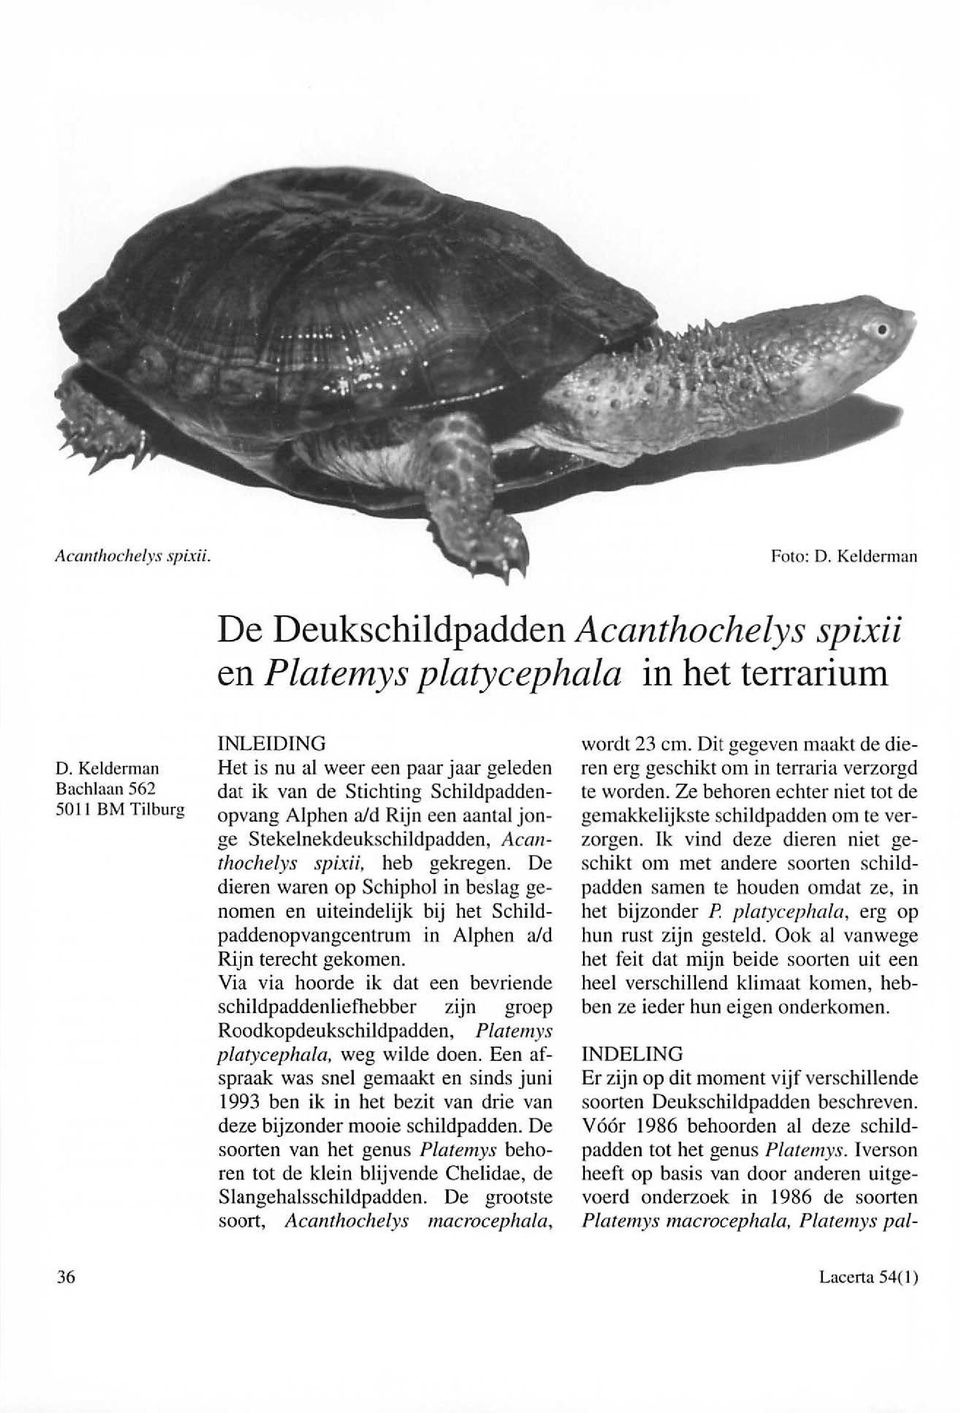 Acanthochelys spixii, heb gekregen. De dieren waren op Schiphol in beslag genomen en uiteindelijk bij het Schildpaddenopvangcentrum in Alphen aid Rijn terecht gekomen.